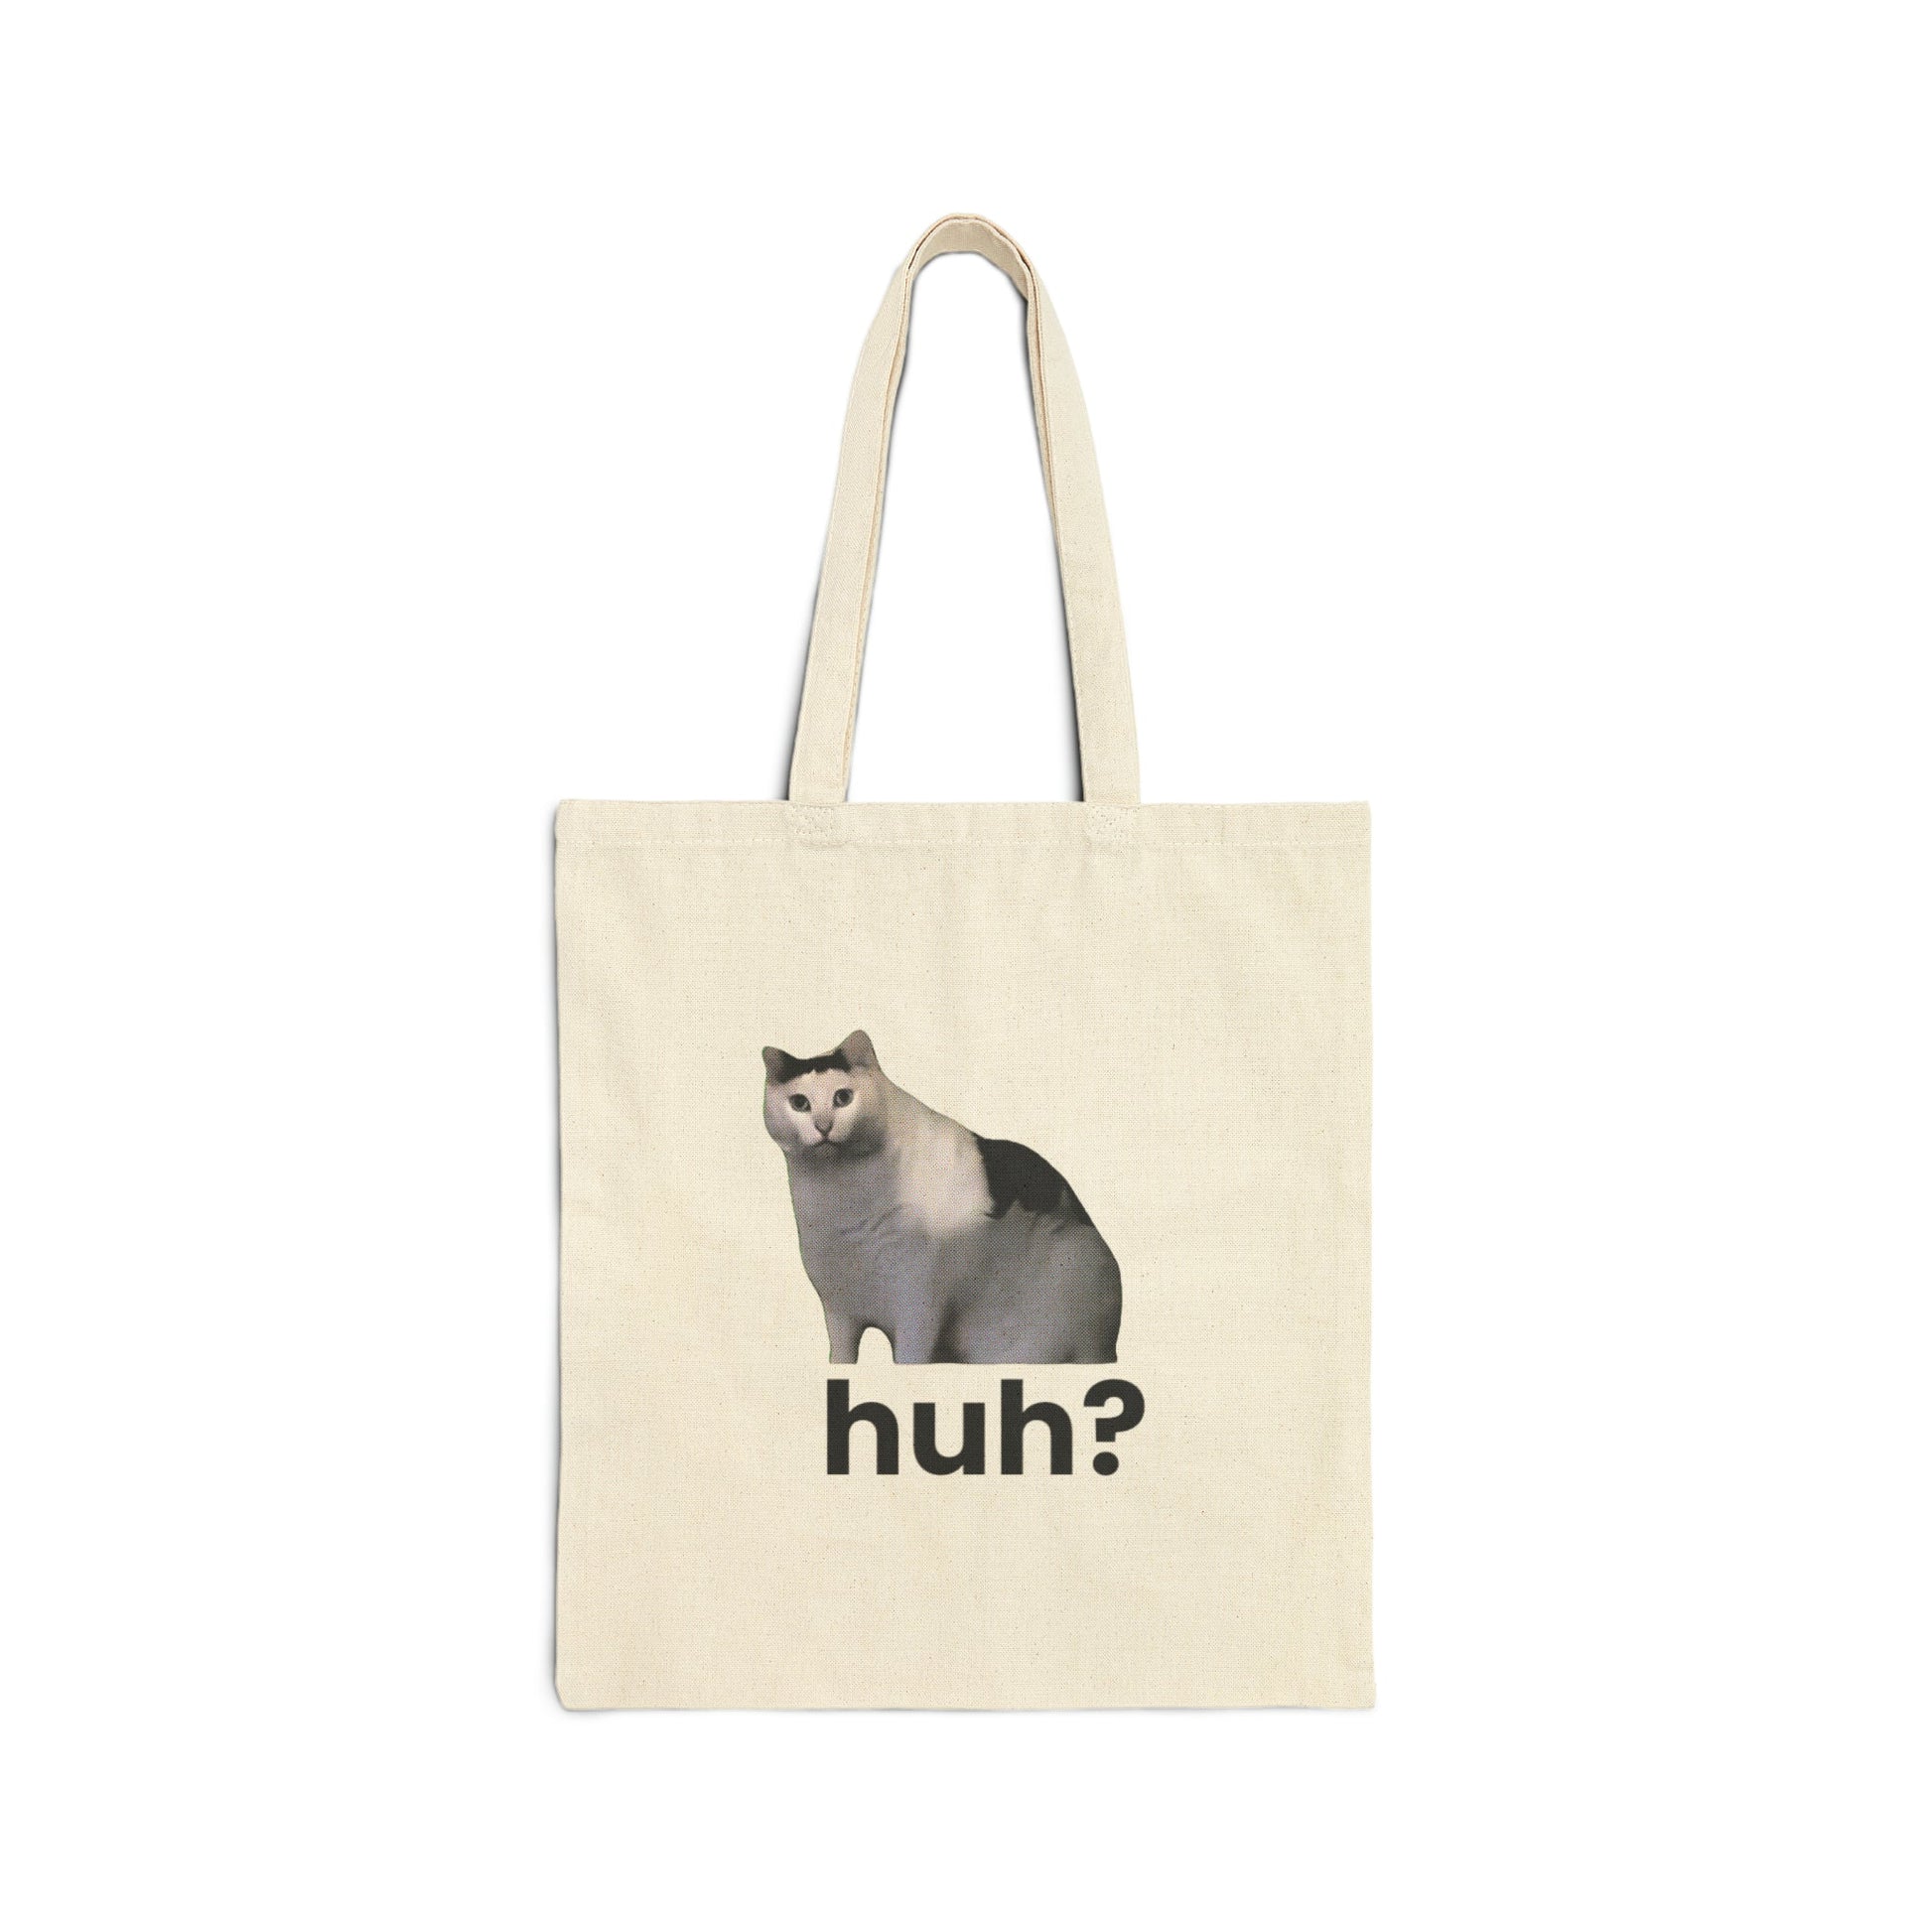 Huh Cat Meme Cotton Canvas Tote Bag - getallfun